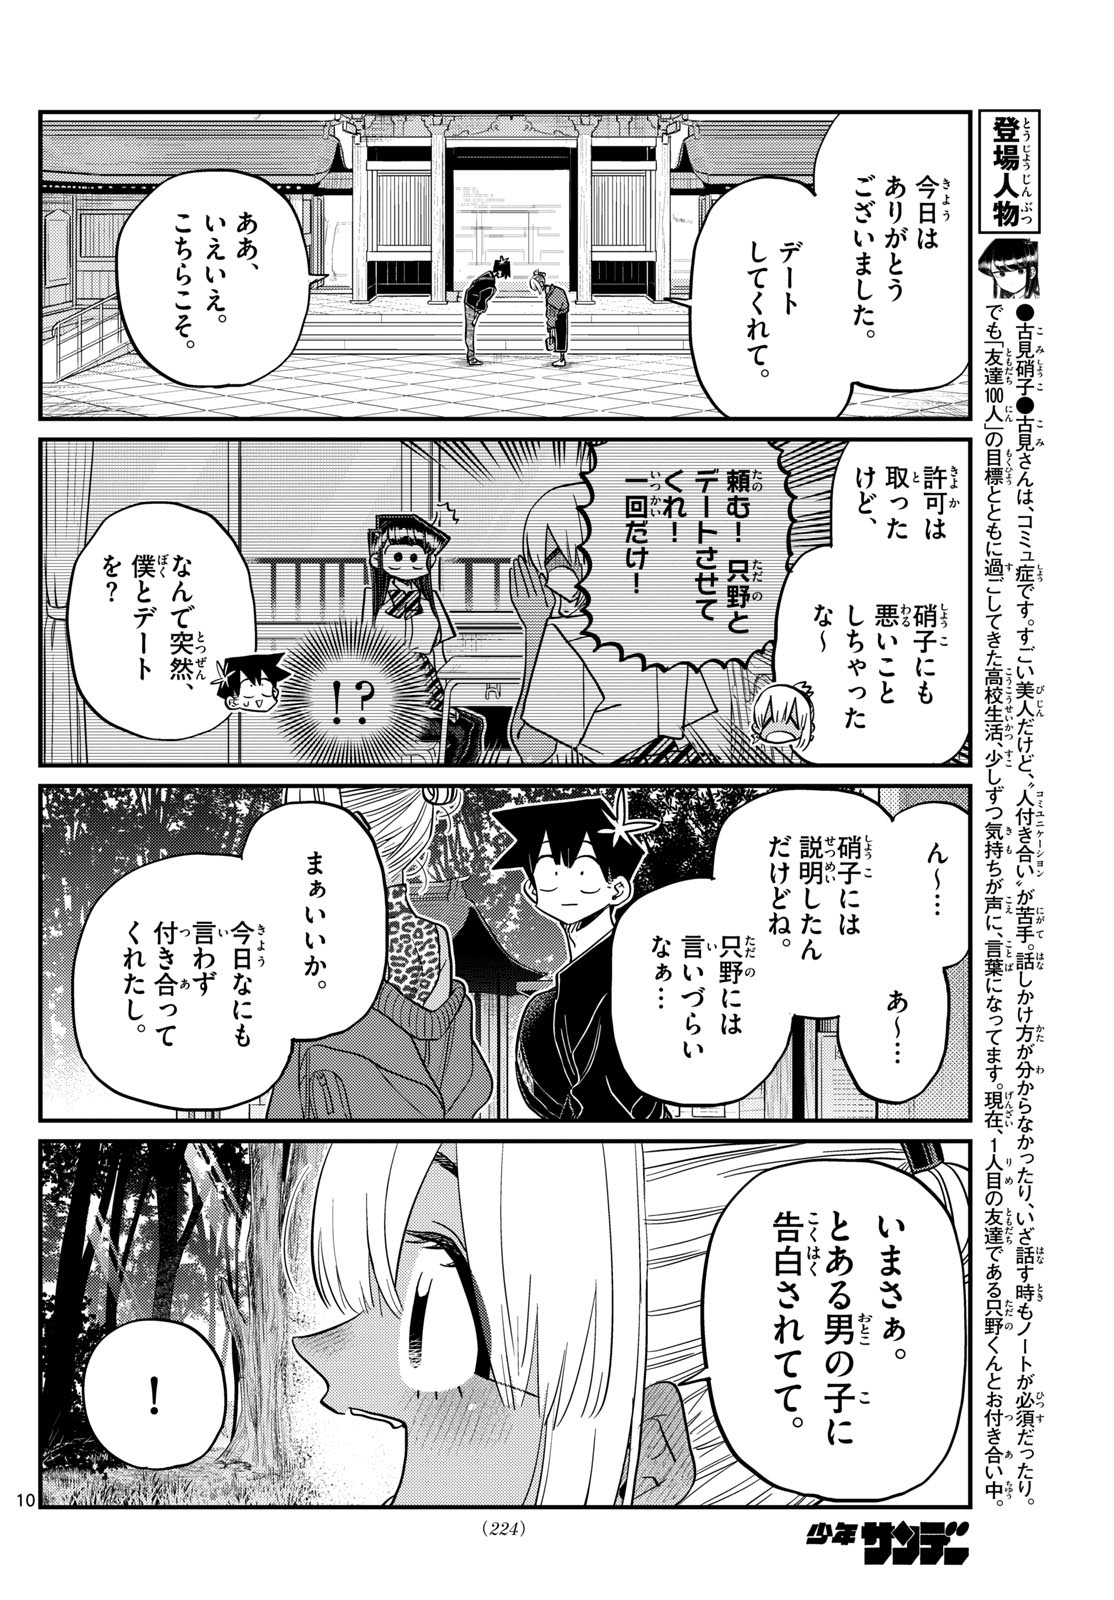 manga: Komi San wa Komyushou Desu Chapter: 433 #manga #mangadaily  #mangaedits #mangameme #komicantcommunicate #komisanwakomyushoudesu…